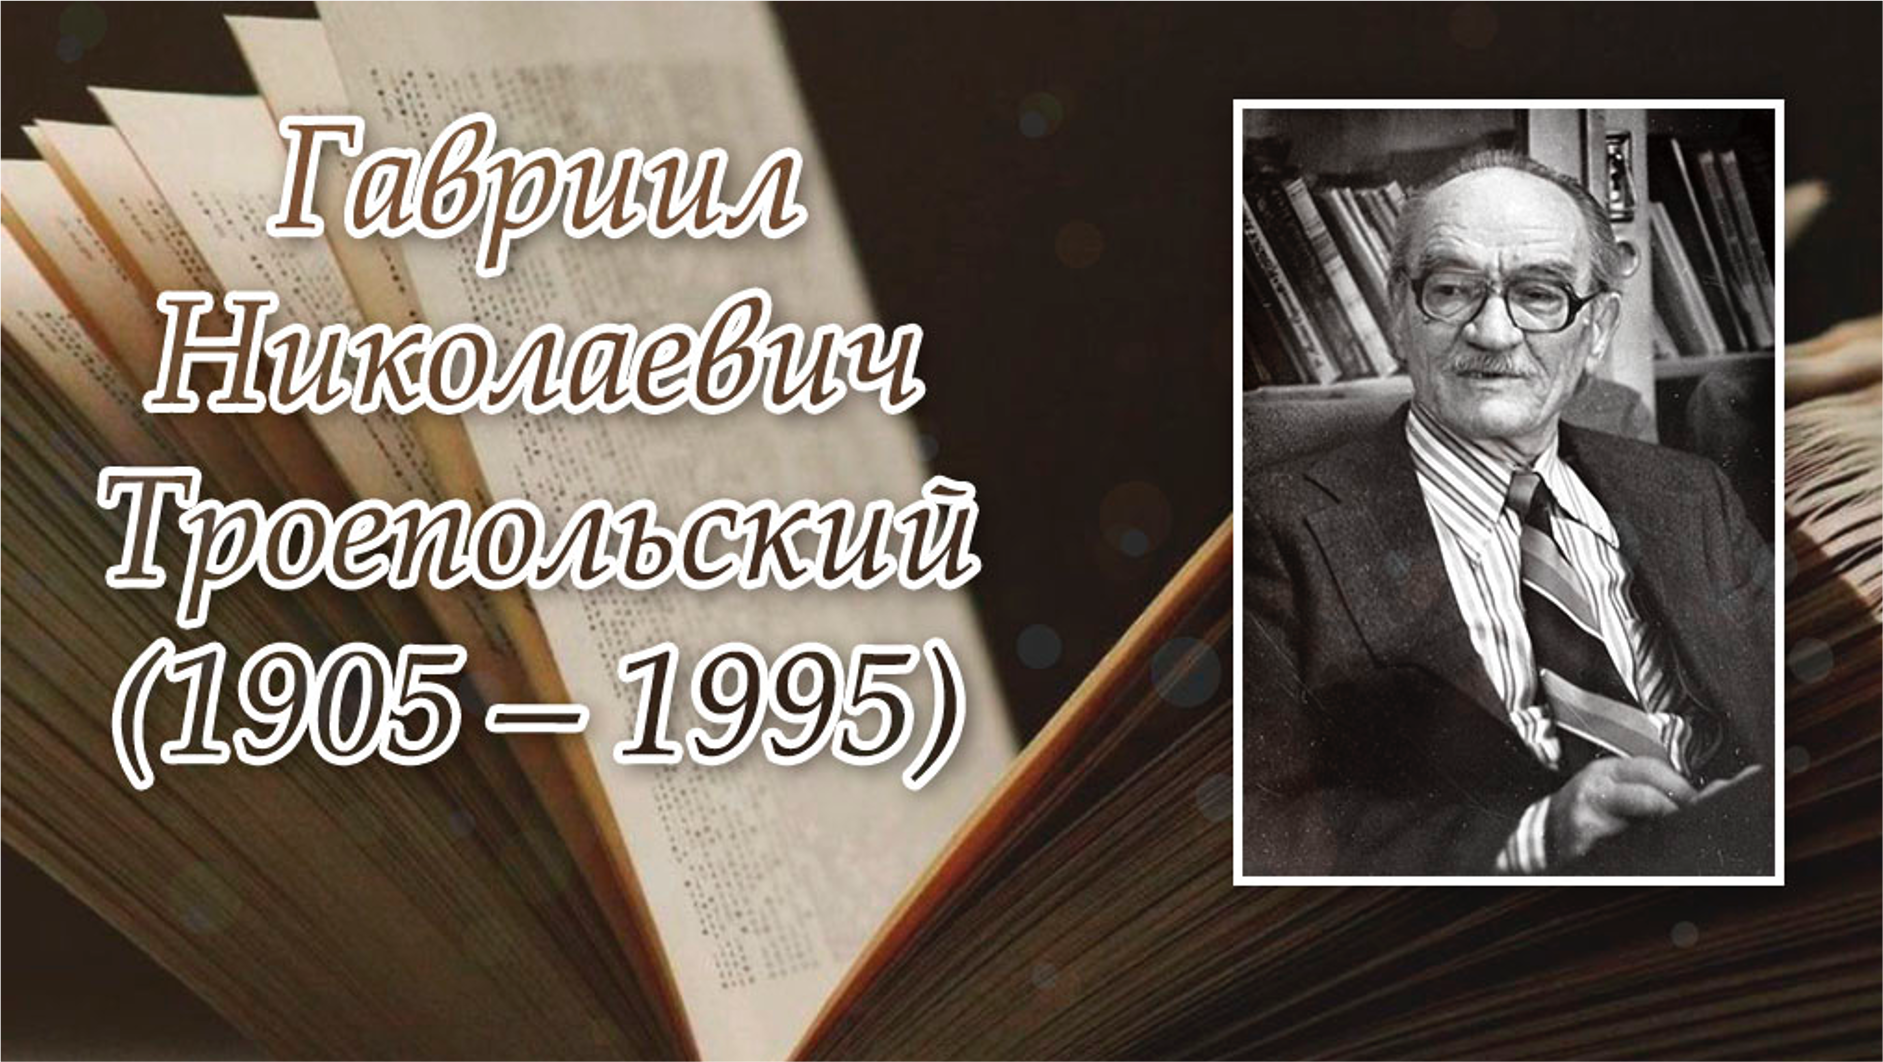 Ноябрь писатели. 29 Ноября родился писатель Троепольский.